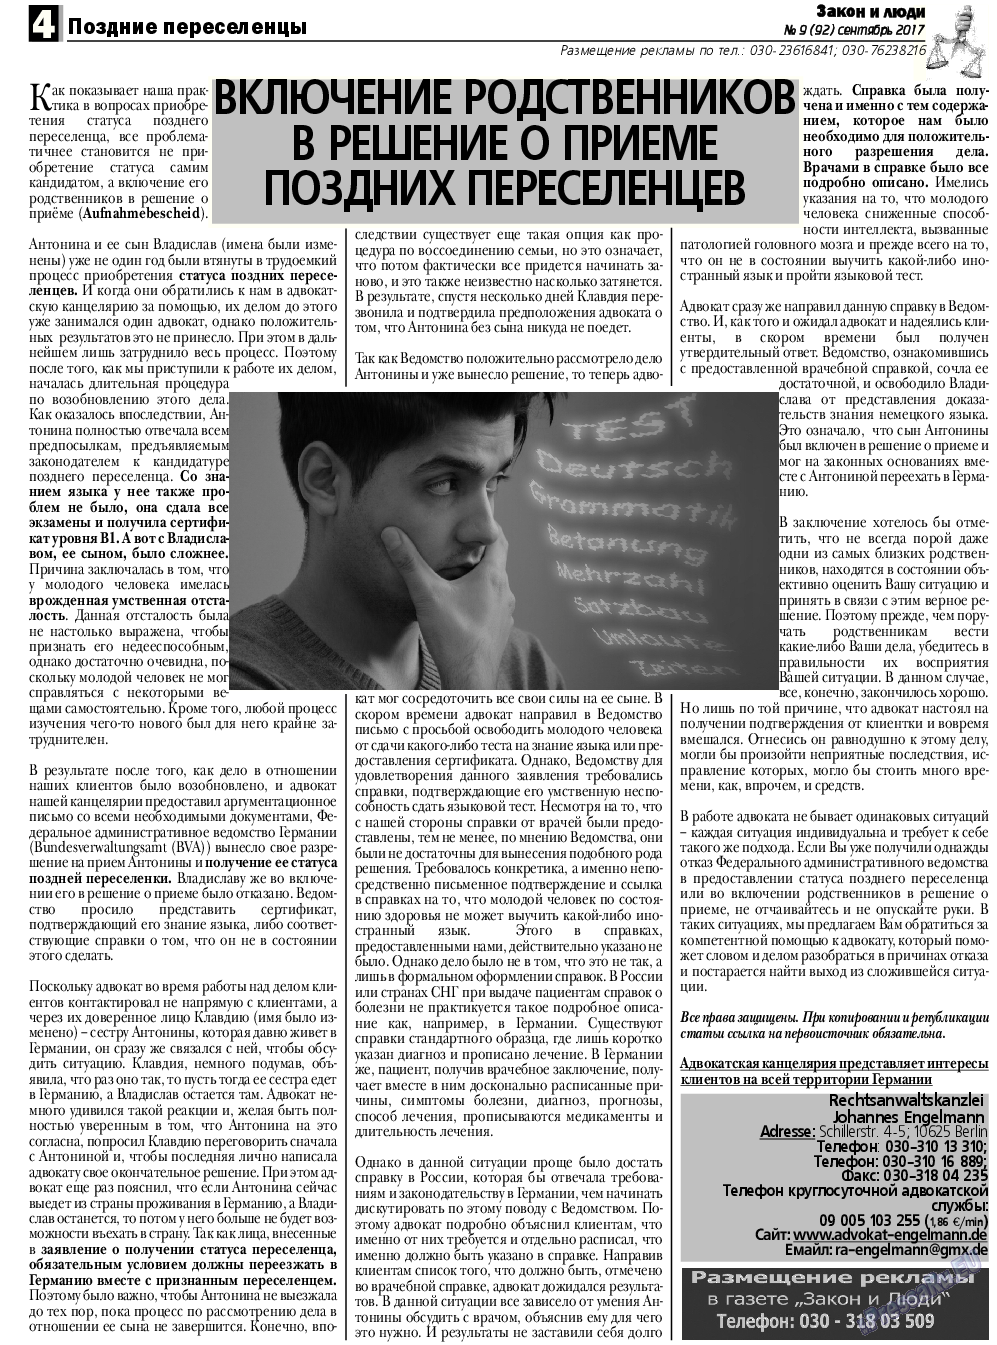 Закон и люди, газета. 2017 №9 стр.4